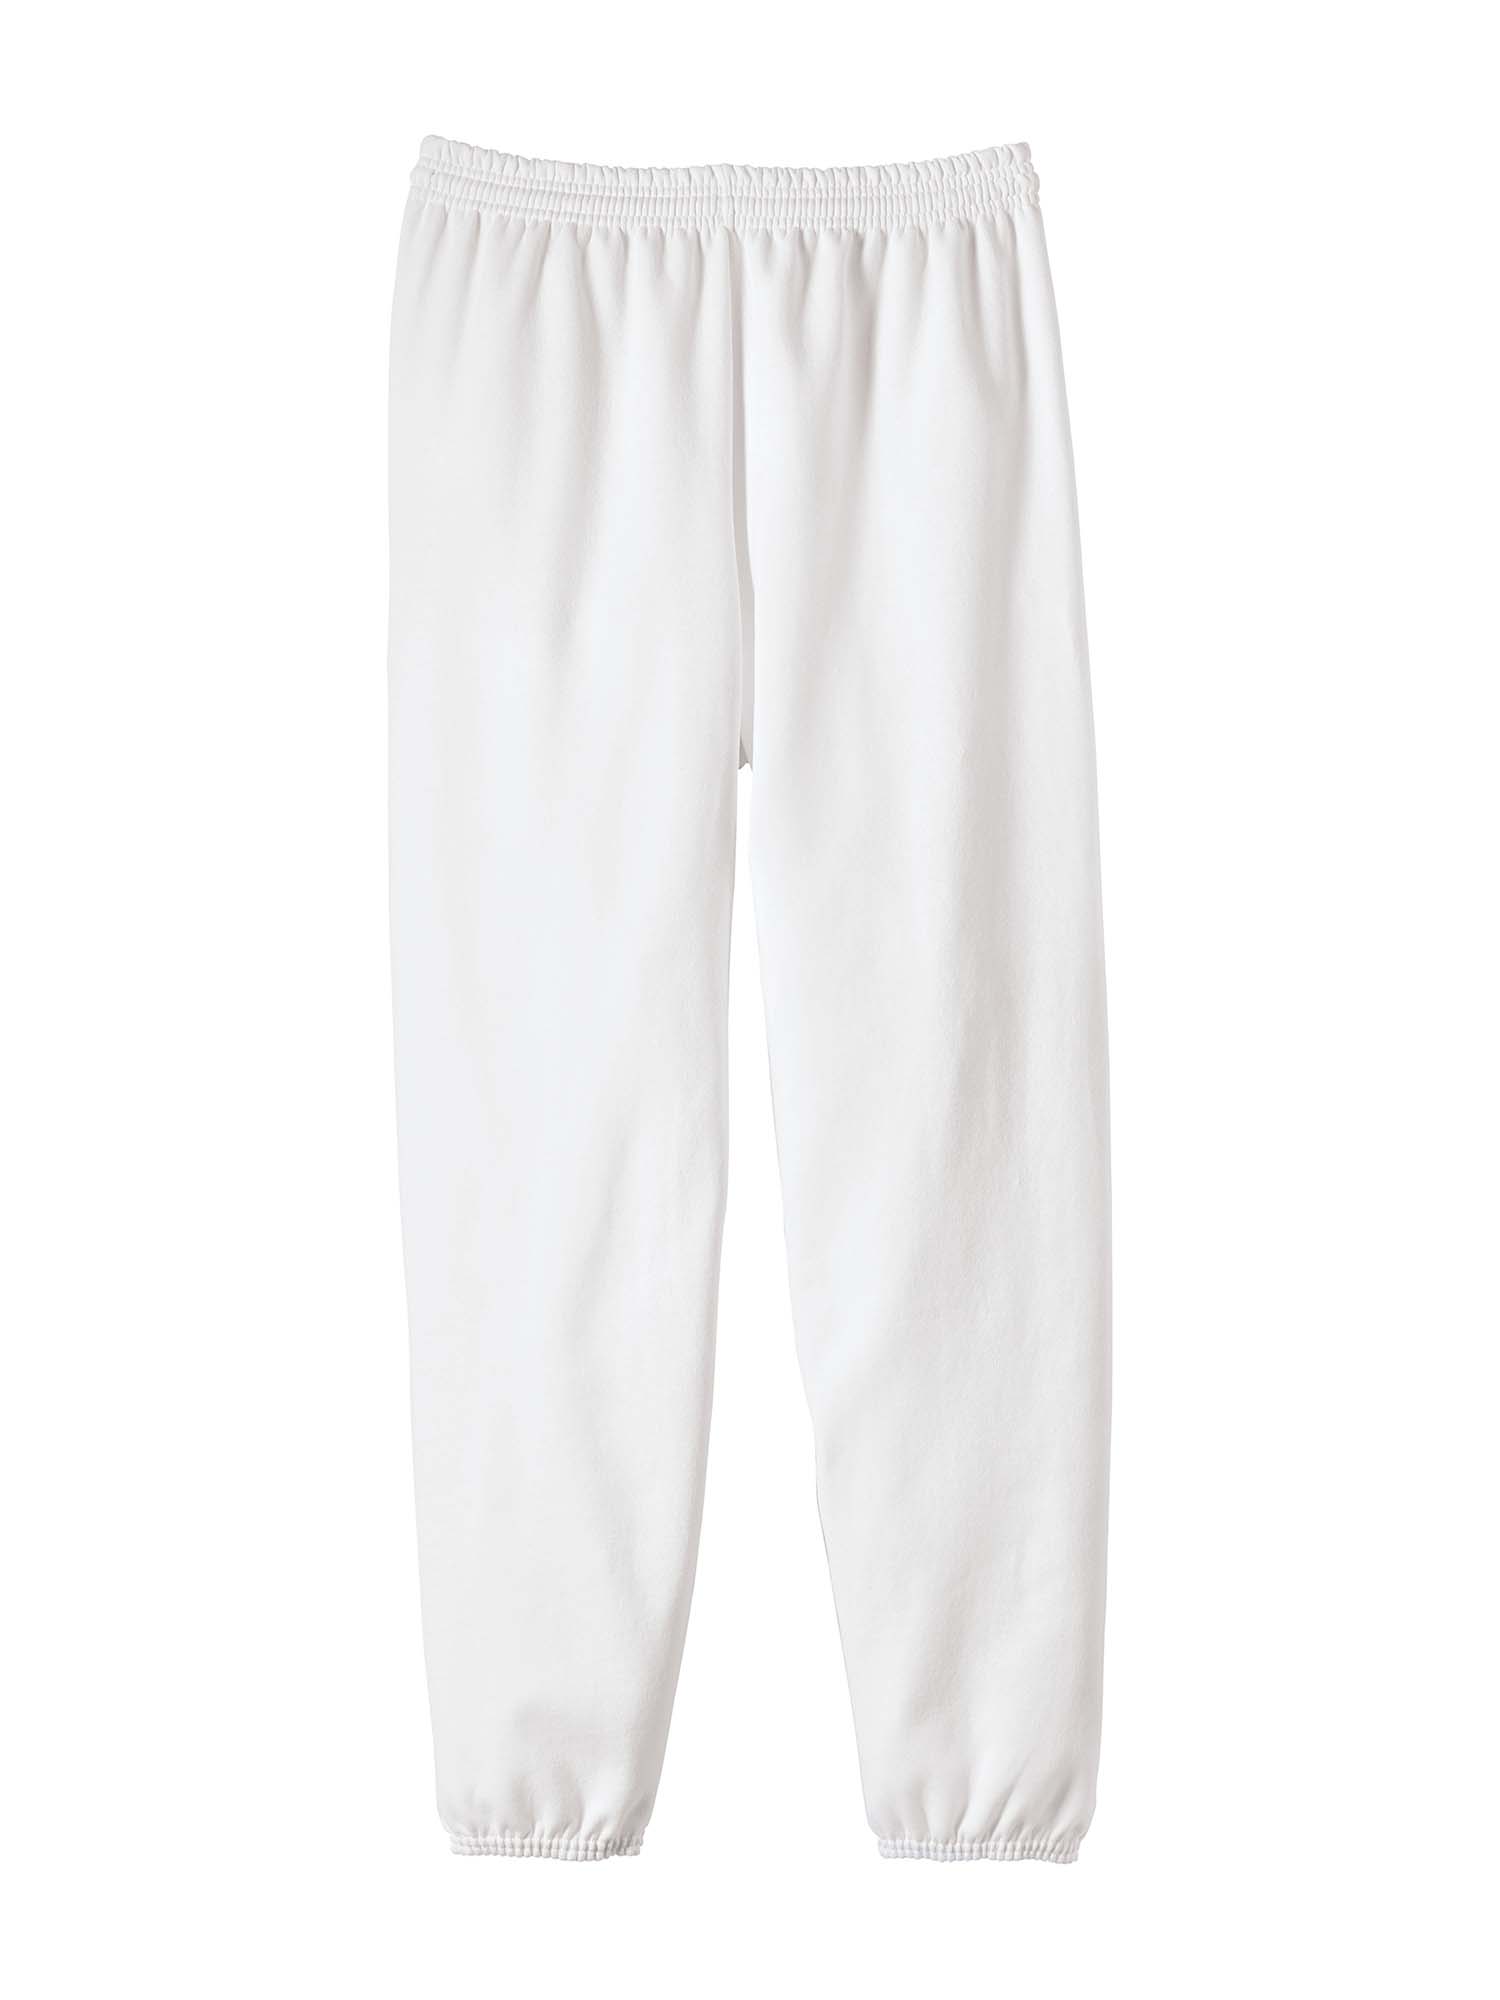 Hanes Men's and Big Men's EcoSmart Fleece Sweatpants, Sizes S-3XL - image 4 of 7